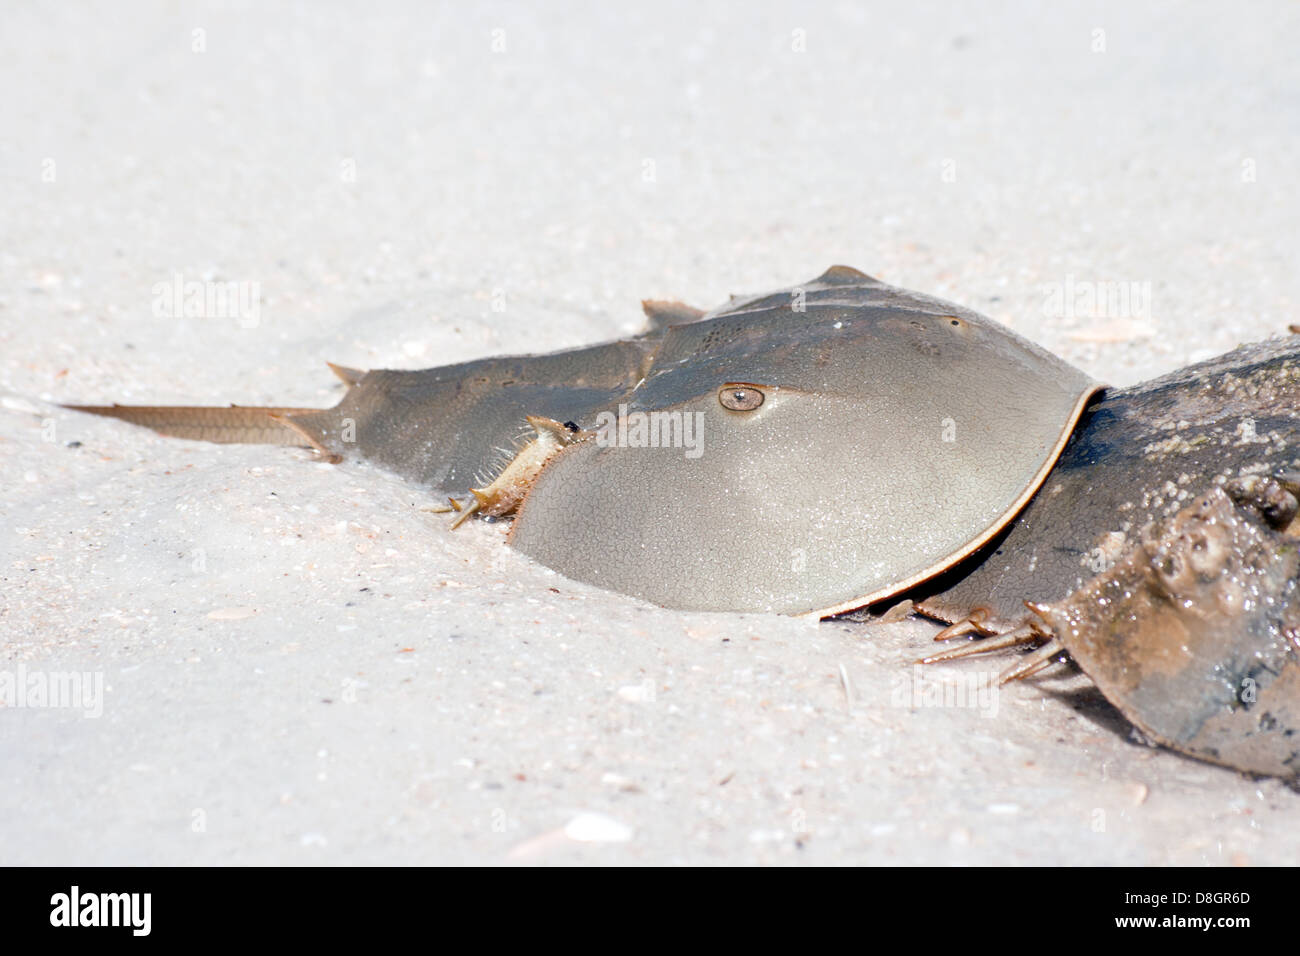 Horseshoe crab (Limulus) Stock Photo